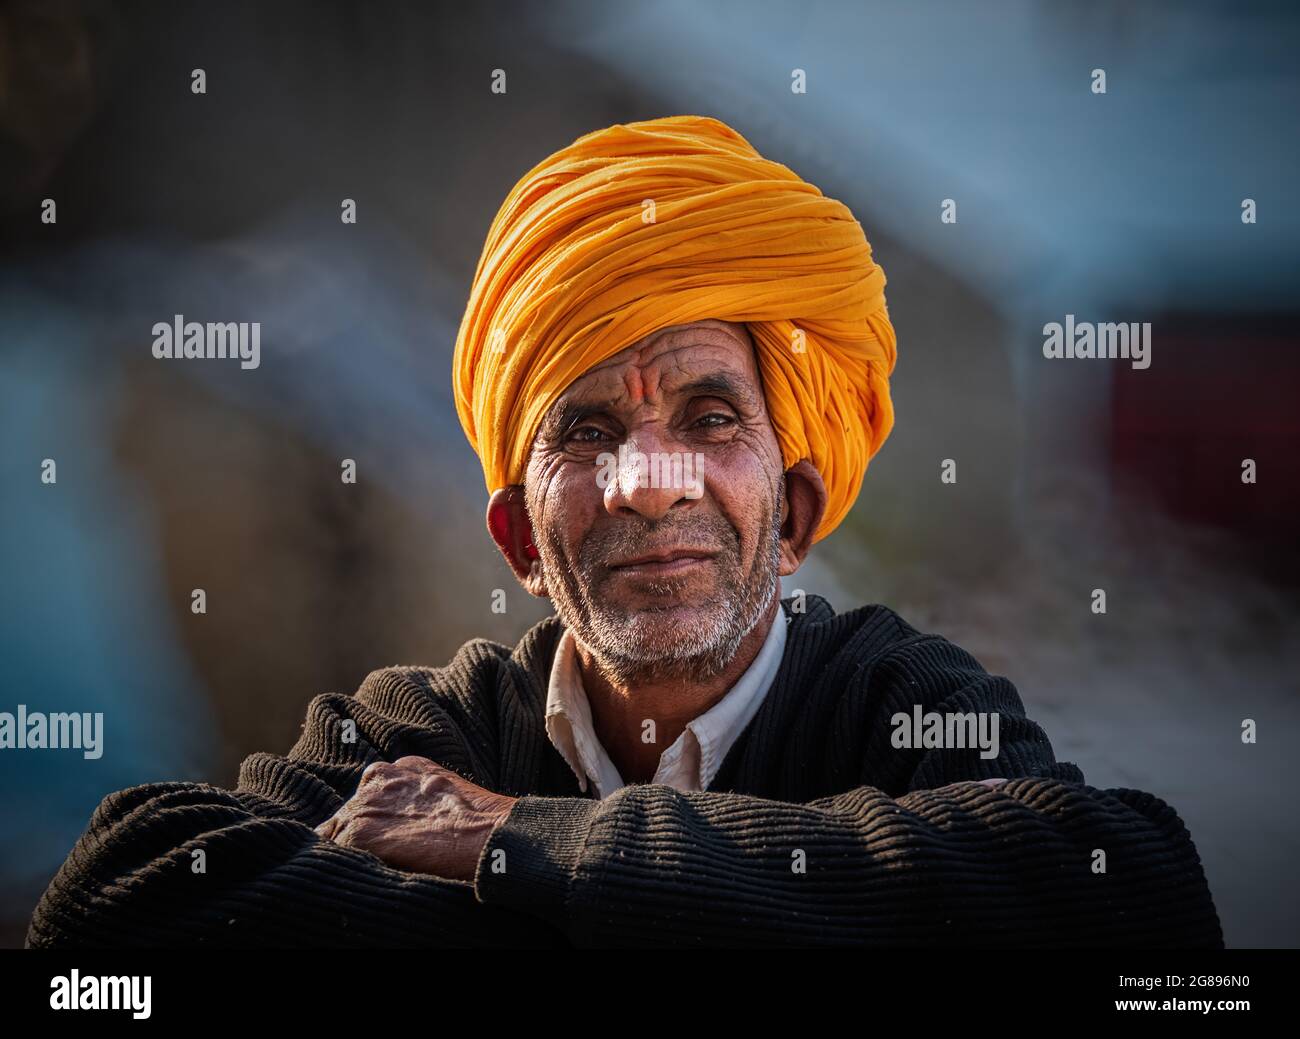 Pushkar, Rajasthan, Indien - 15. Januar 2020 : Porträt eines indischen Rajasthani-Mannes in traditioneller Kleidung mit Turban (Pagadi) auf dem Kopf bei P gekleidet Stockfoto